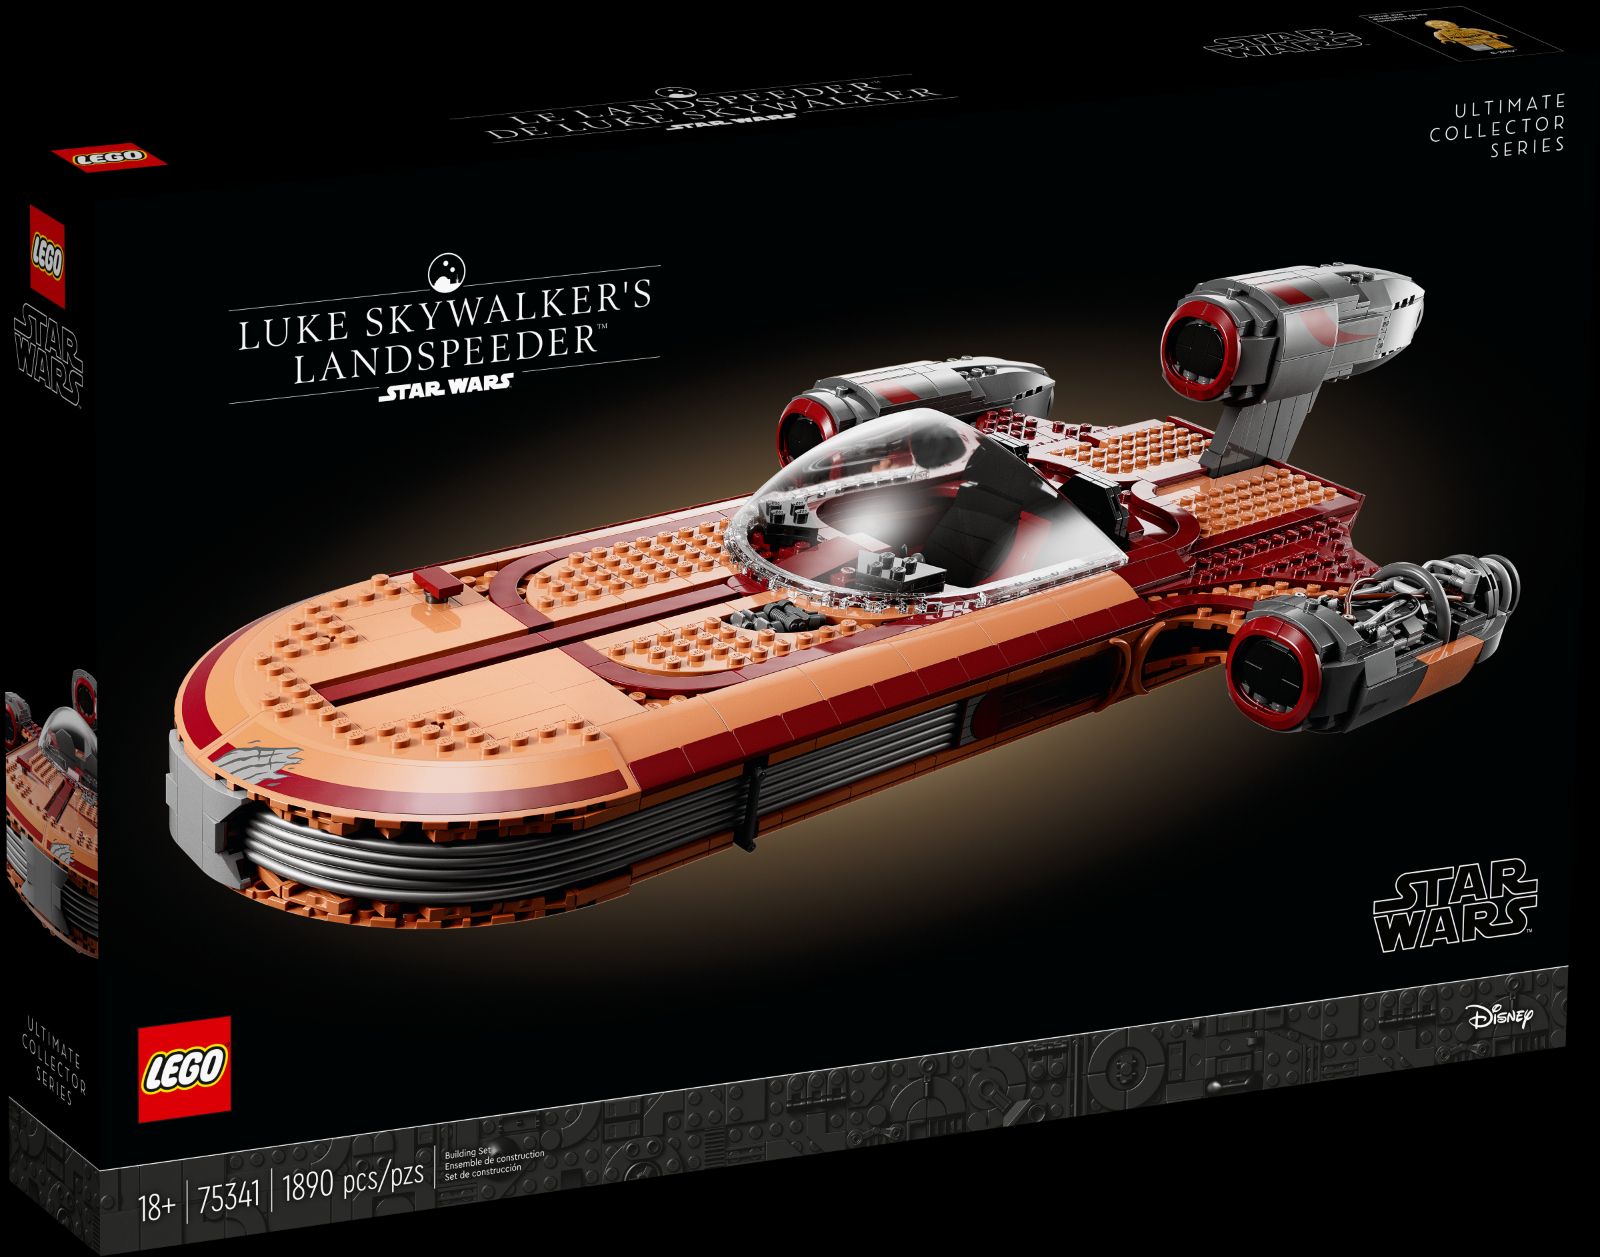 Luke’s Landspeeder Is LEGO’s New Giant Star Wars Set